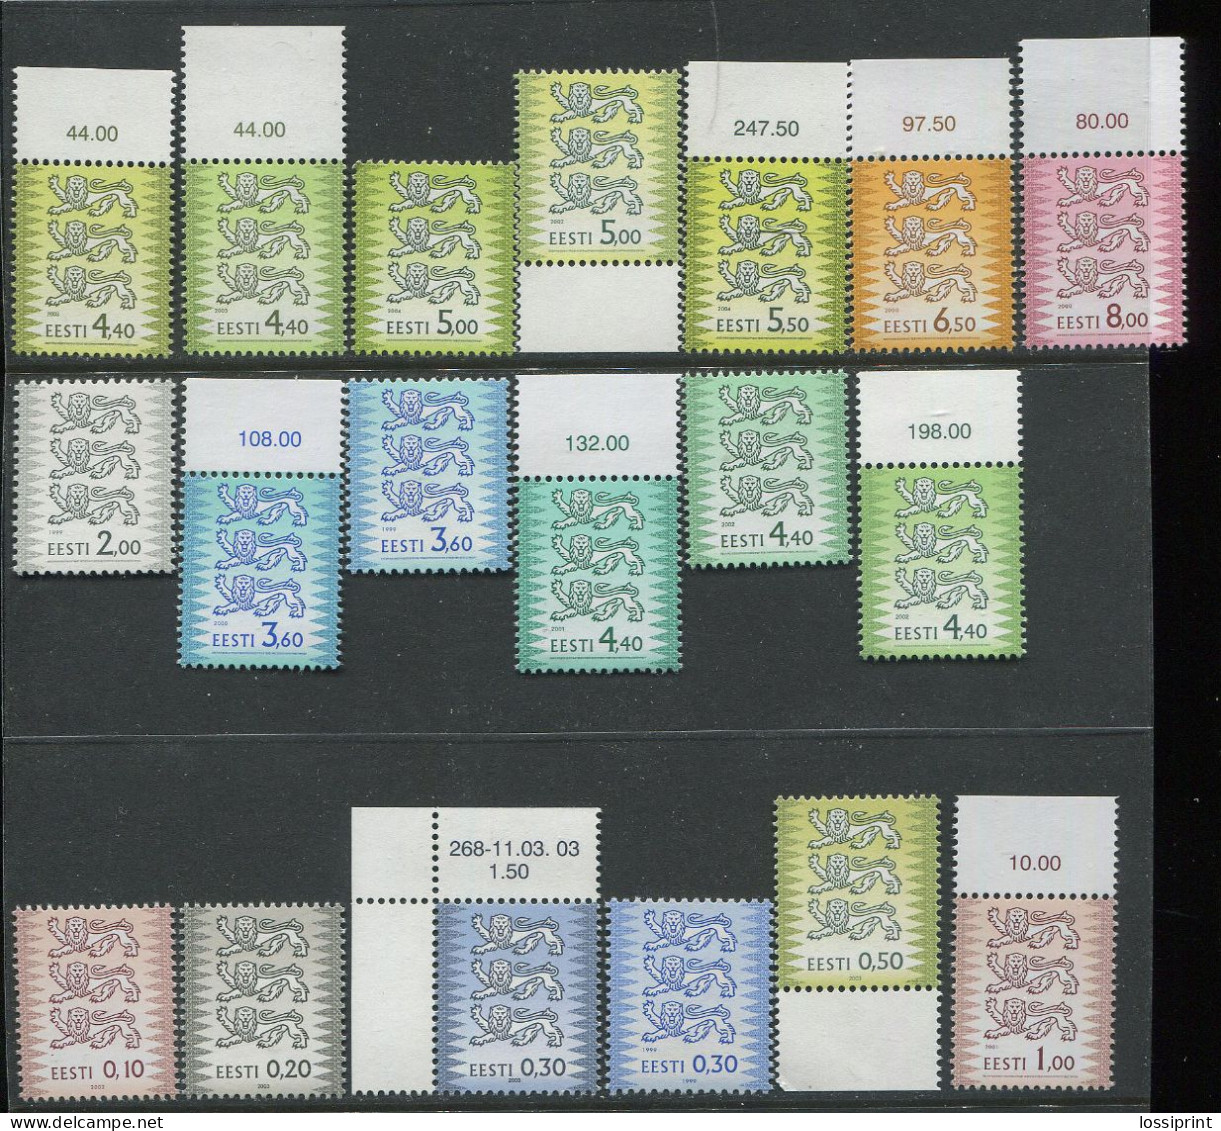 Estonia:Unused Stamps Serie Coat Of Arms, 1999-2004, MNH, Corner - Briefmarken